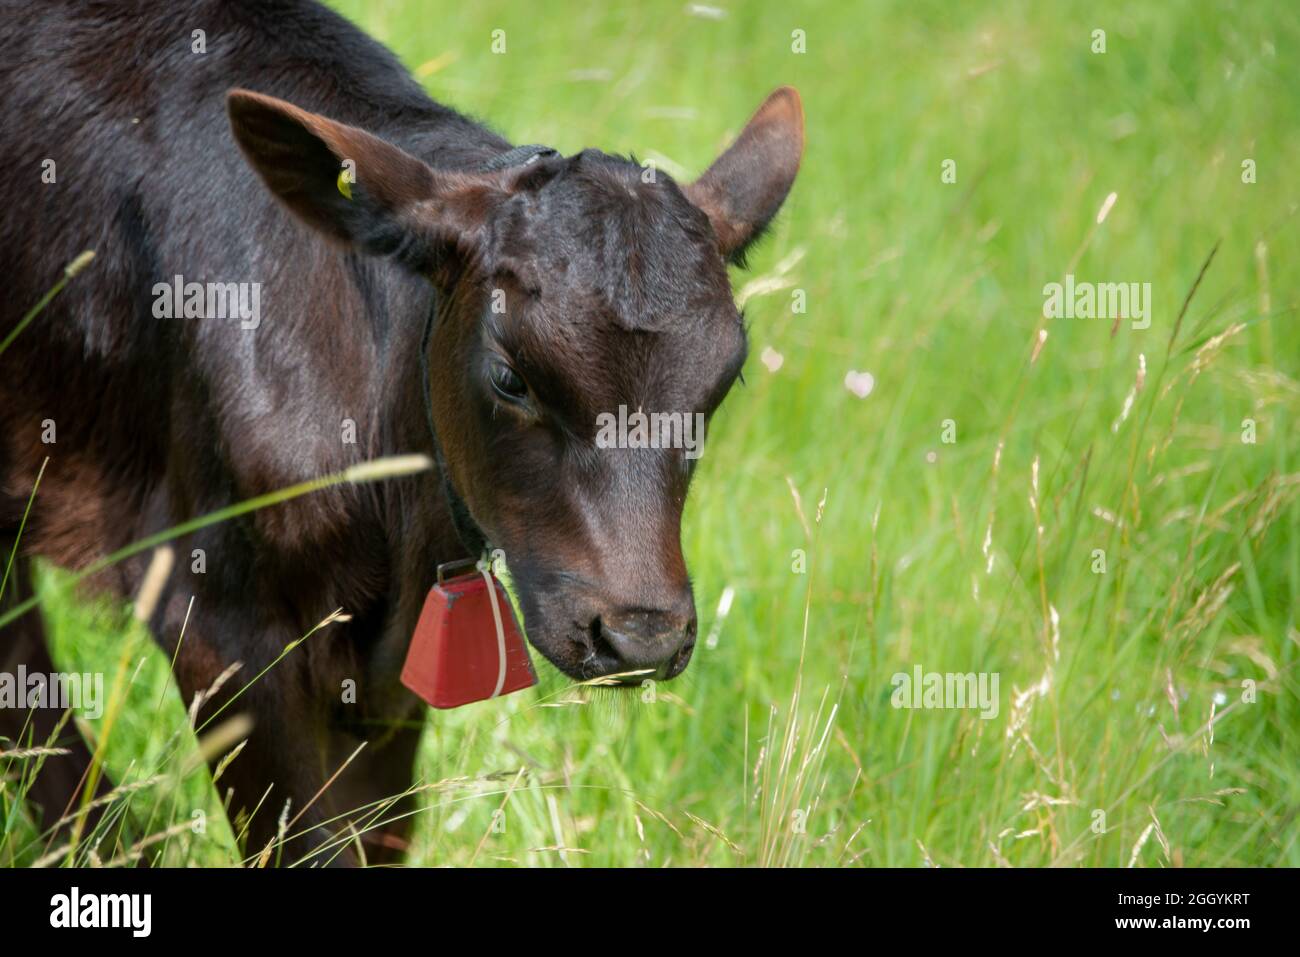 Ein süßer junger Bulle steht auf einem grünen Grasfeld. Um den Kopf der Kuh liegen Heustücke. Die Kuh hat eine große rote Metallglocke. Stockfoto